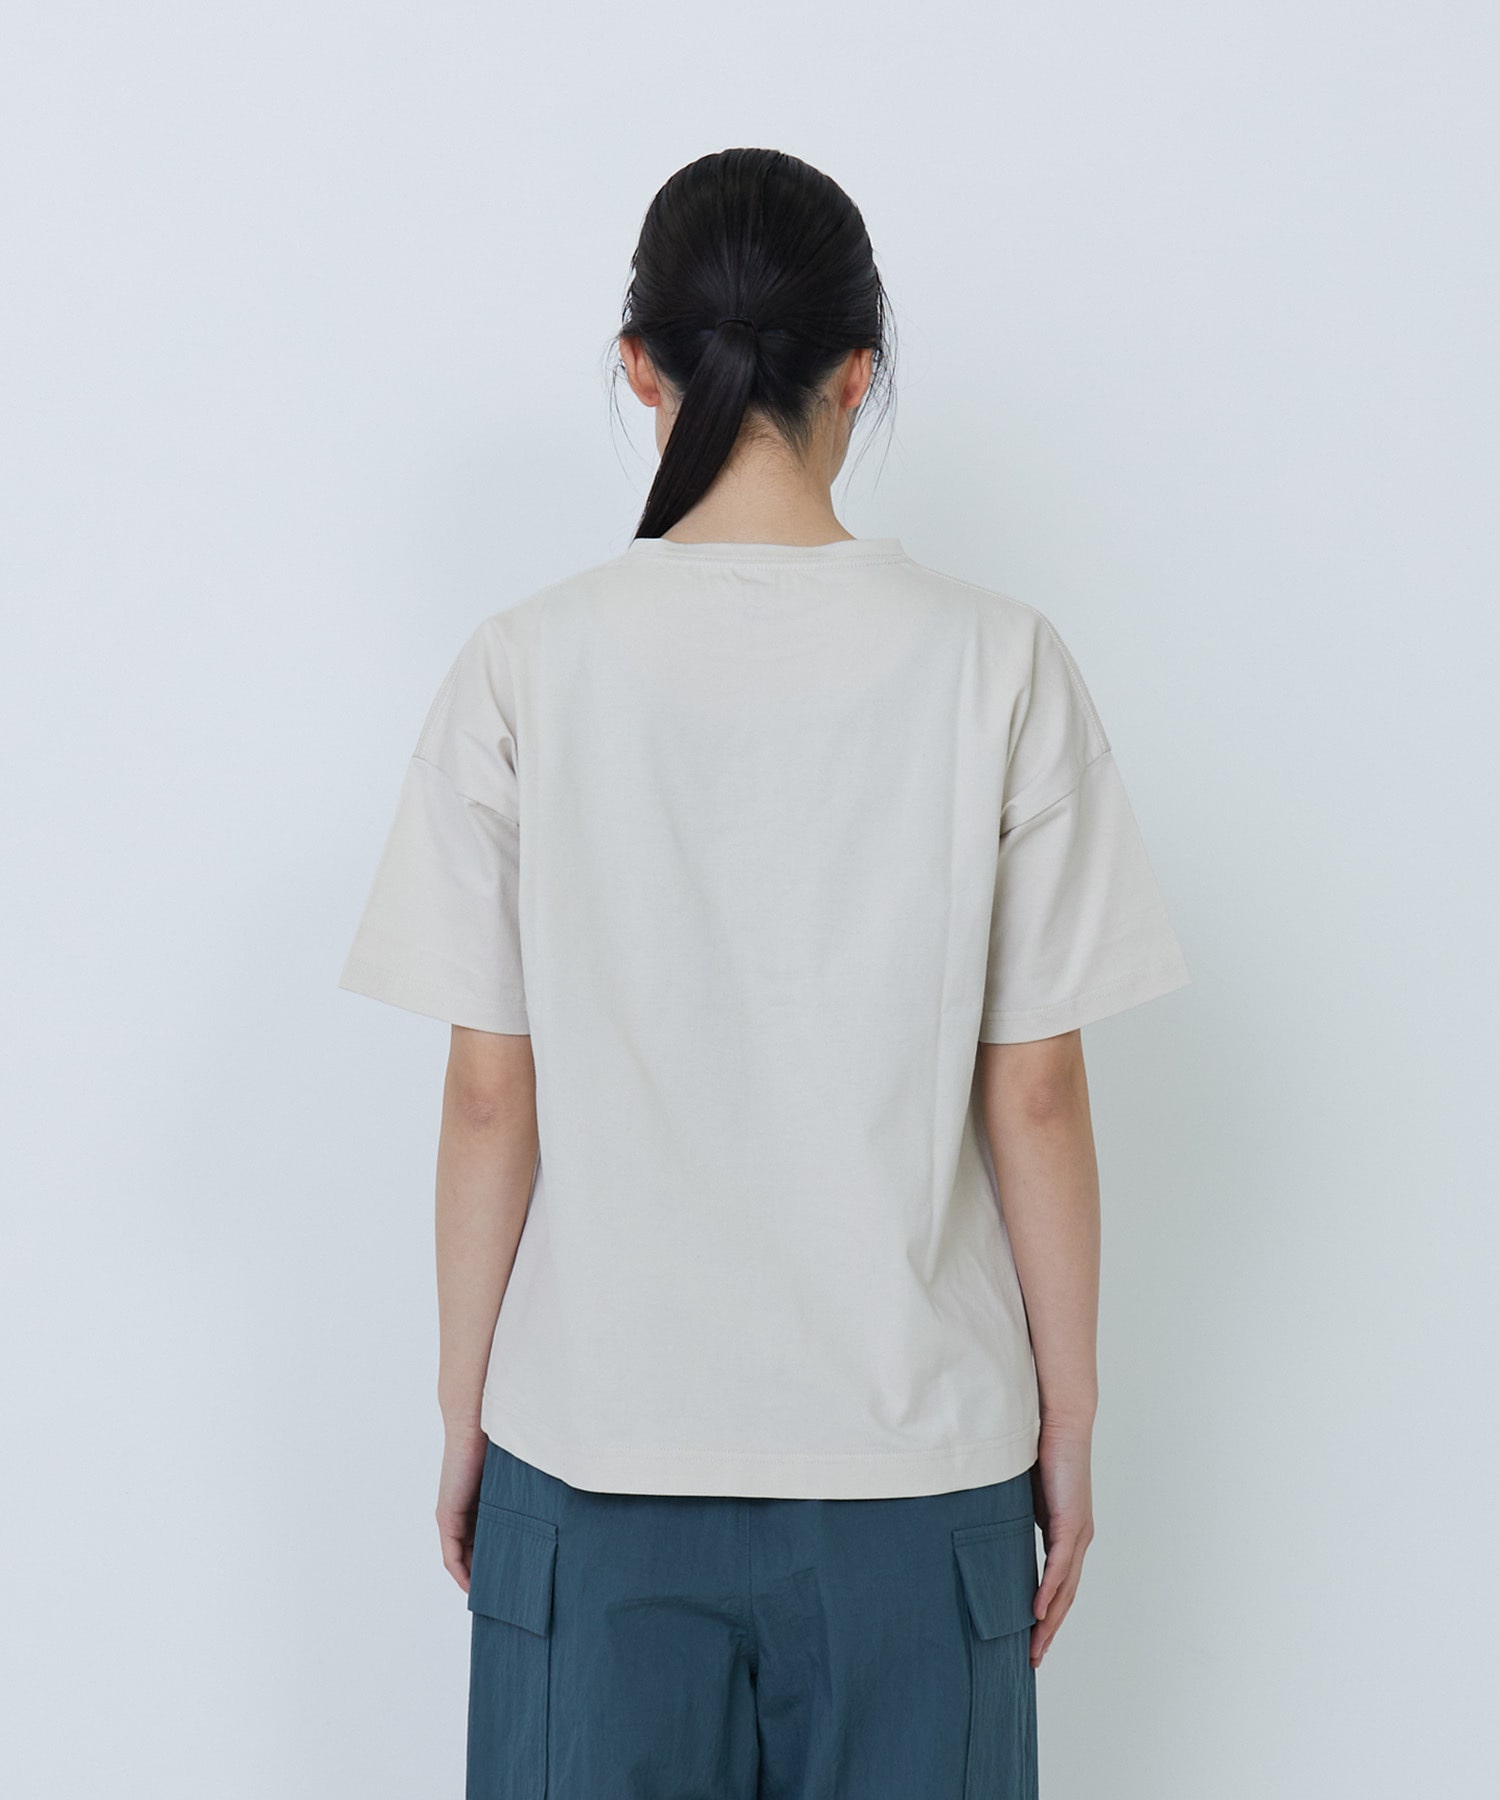 【LOISIR】【アーティストコラボ】PulloaプリントTシャツ 詳細画像 チャコールグレー 14